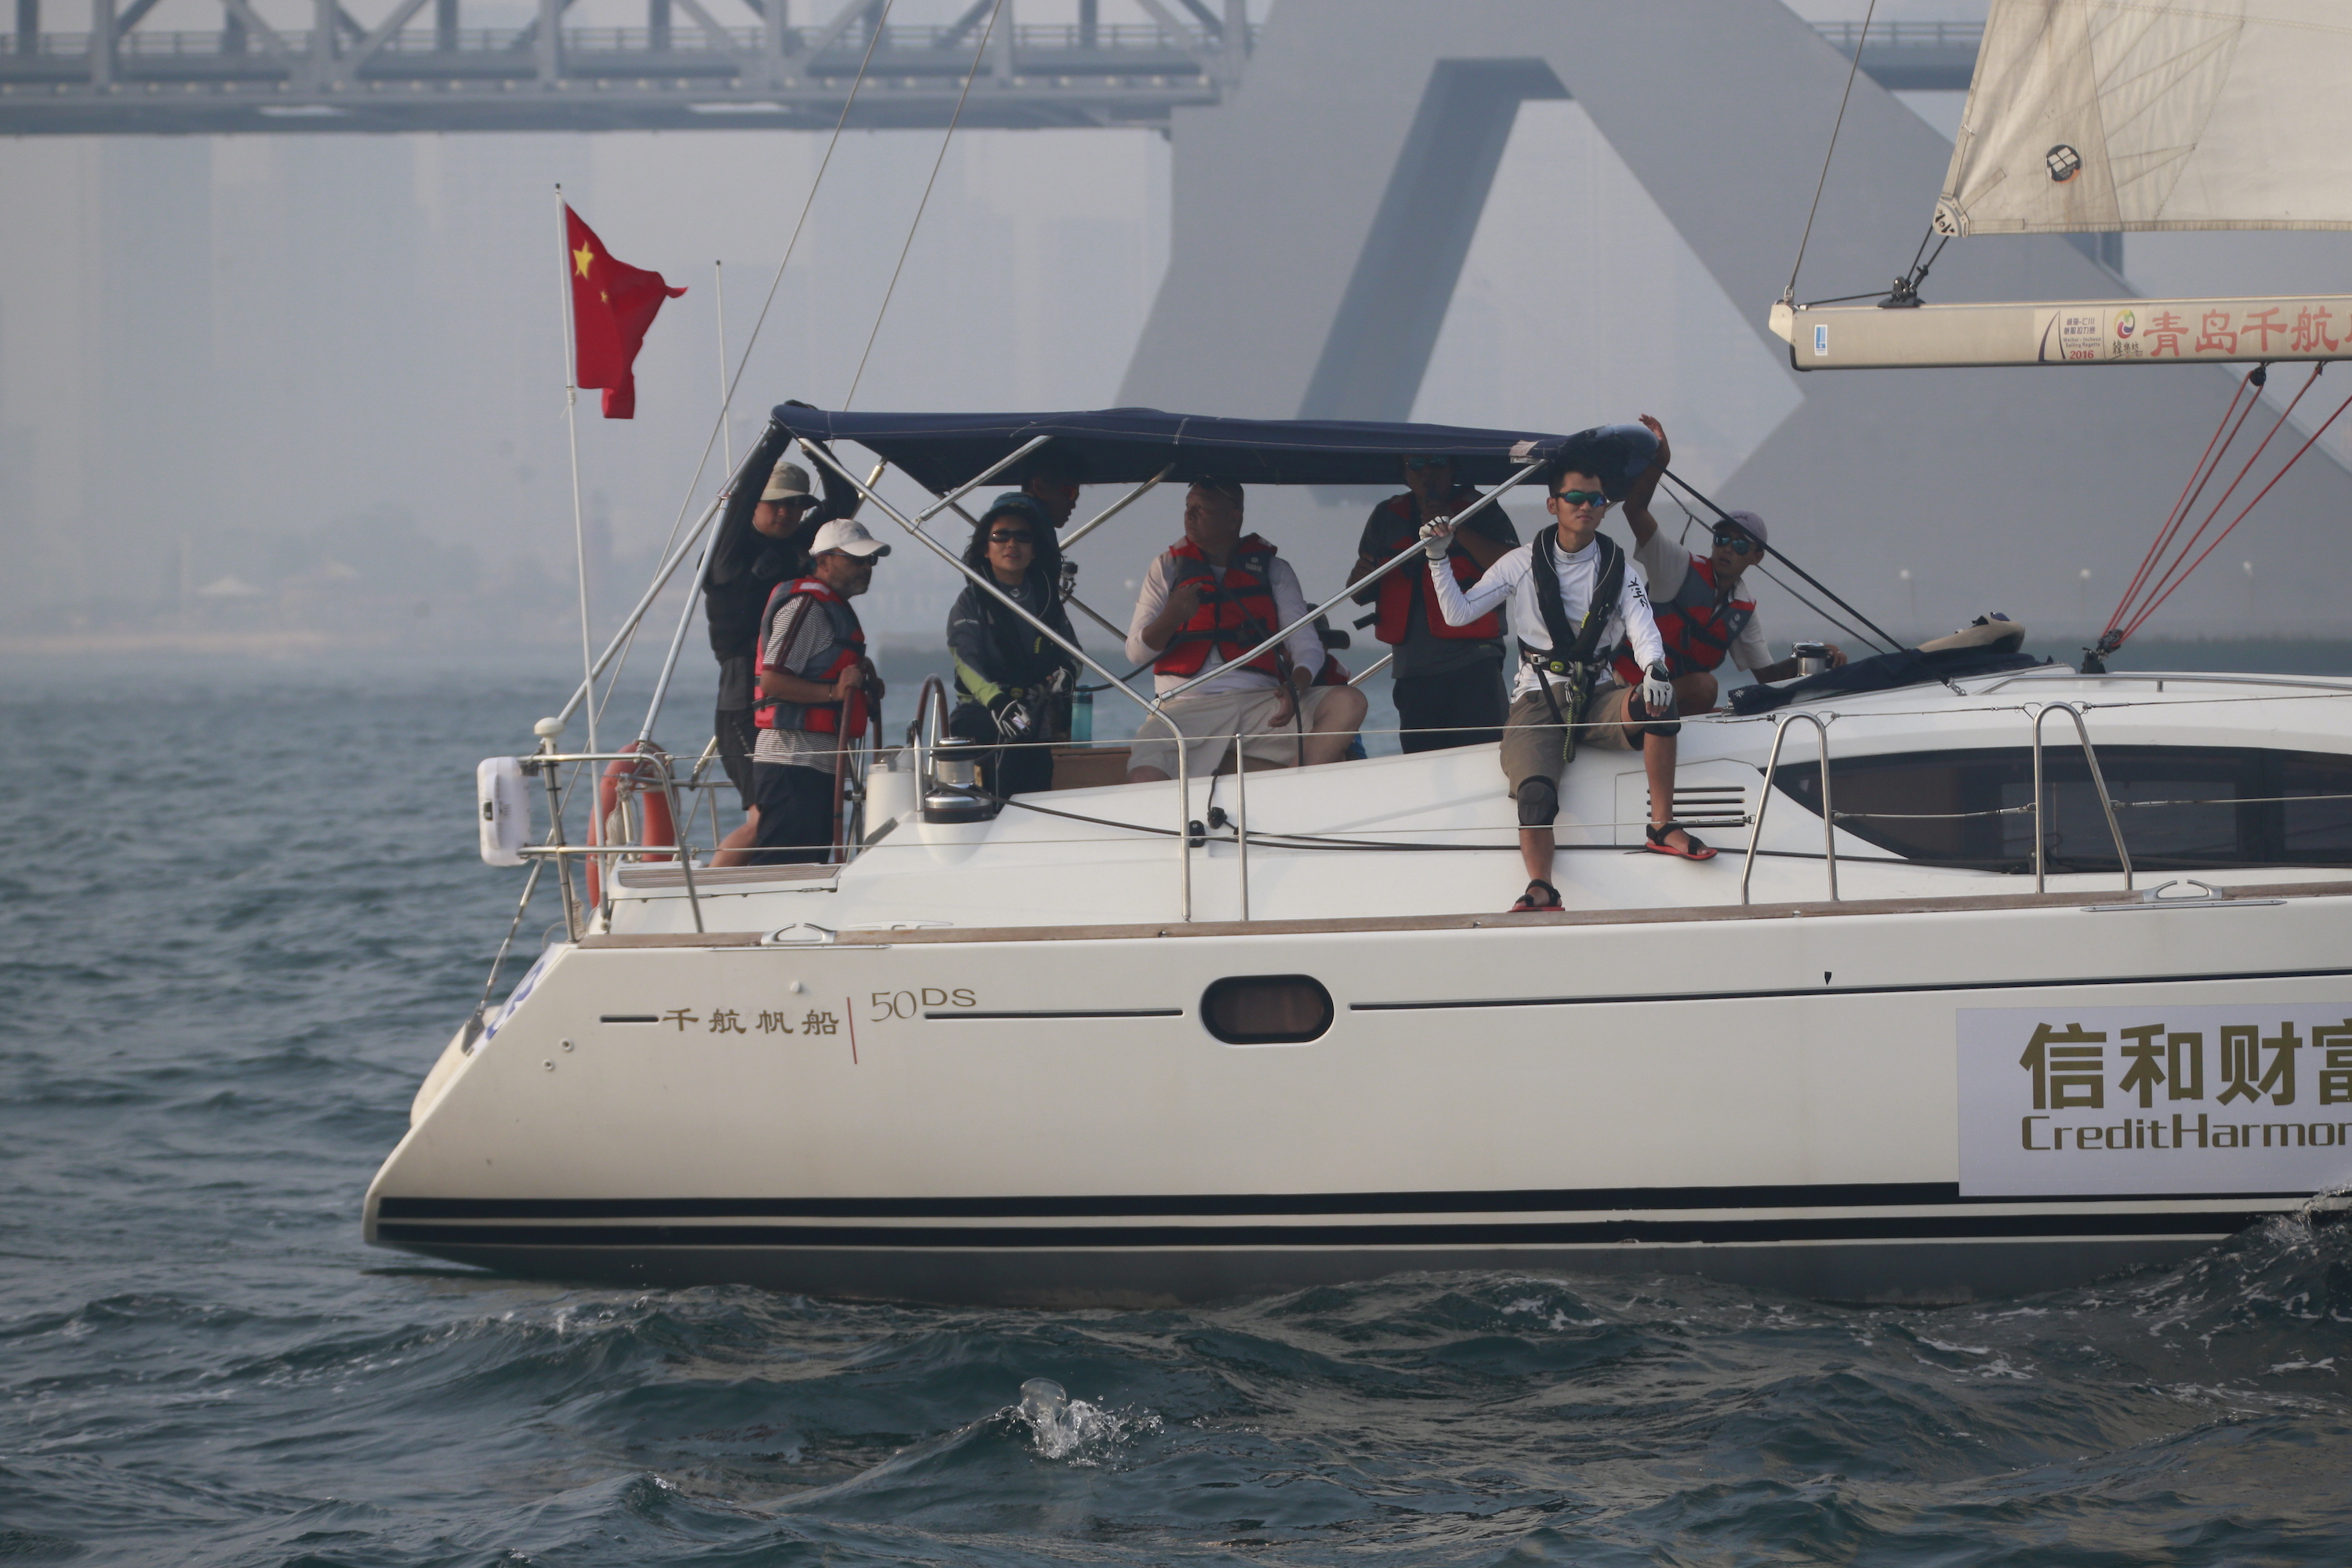 我要航海网千航帆船队2016环渤海杯帆船拉力赛_MG_7769.JPG